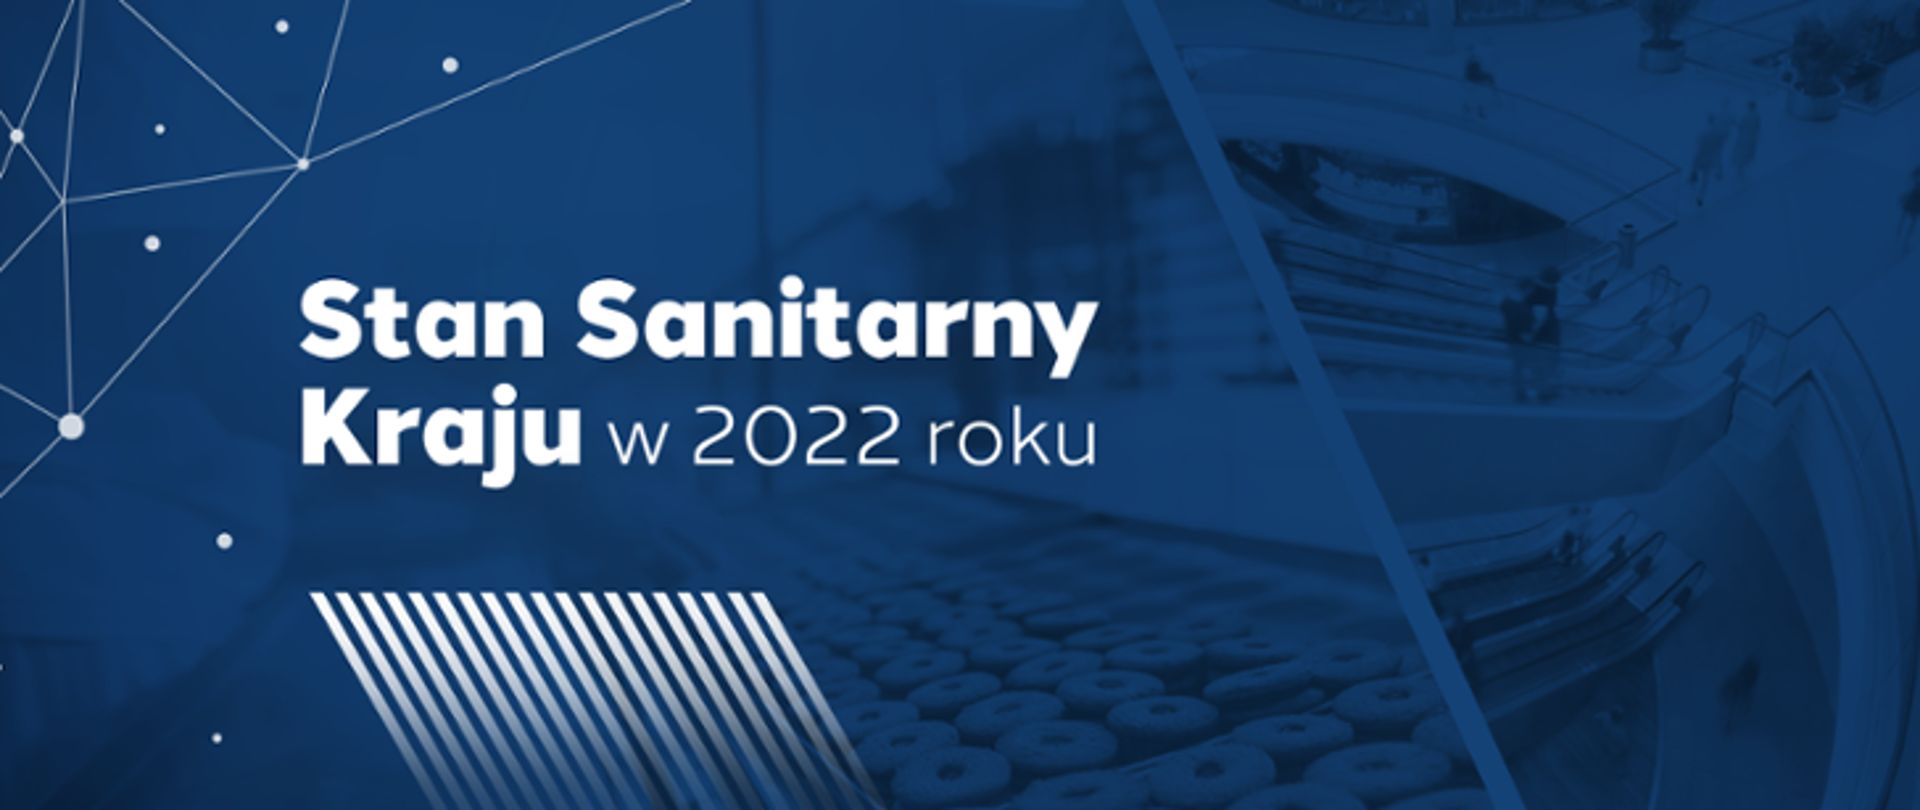 Biały napis na niebieskim tle: Stan Sanitarny kraju w 2022 roku